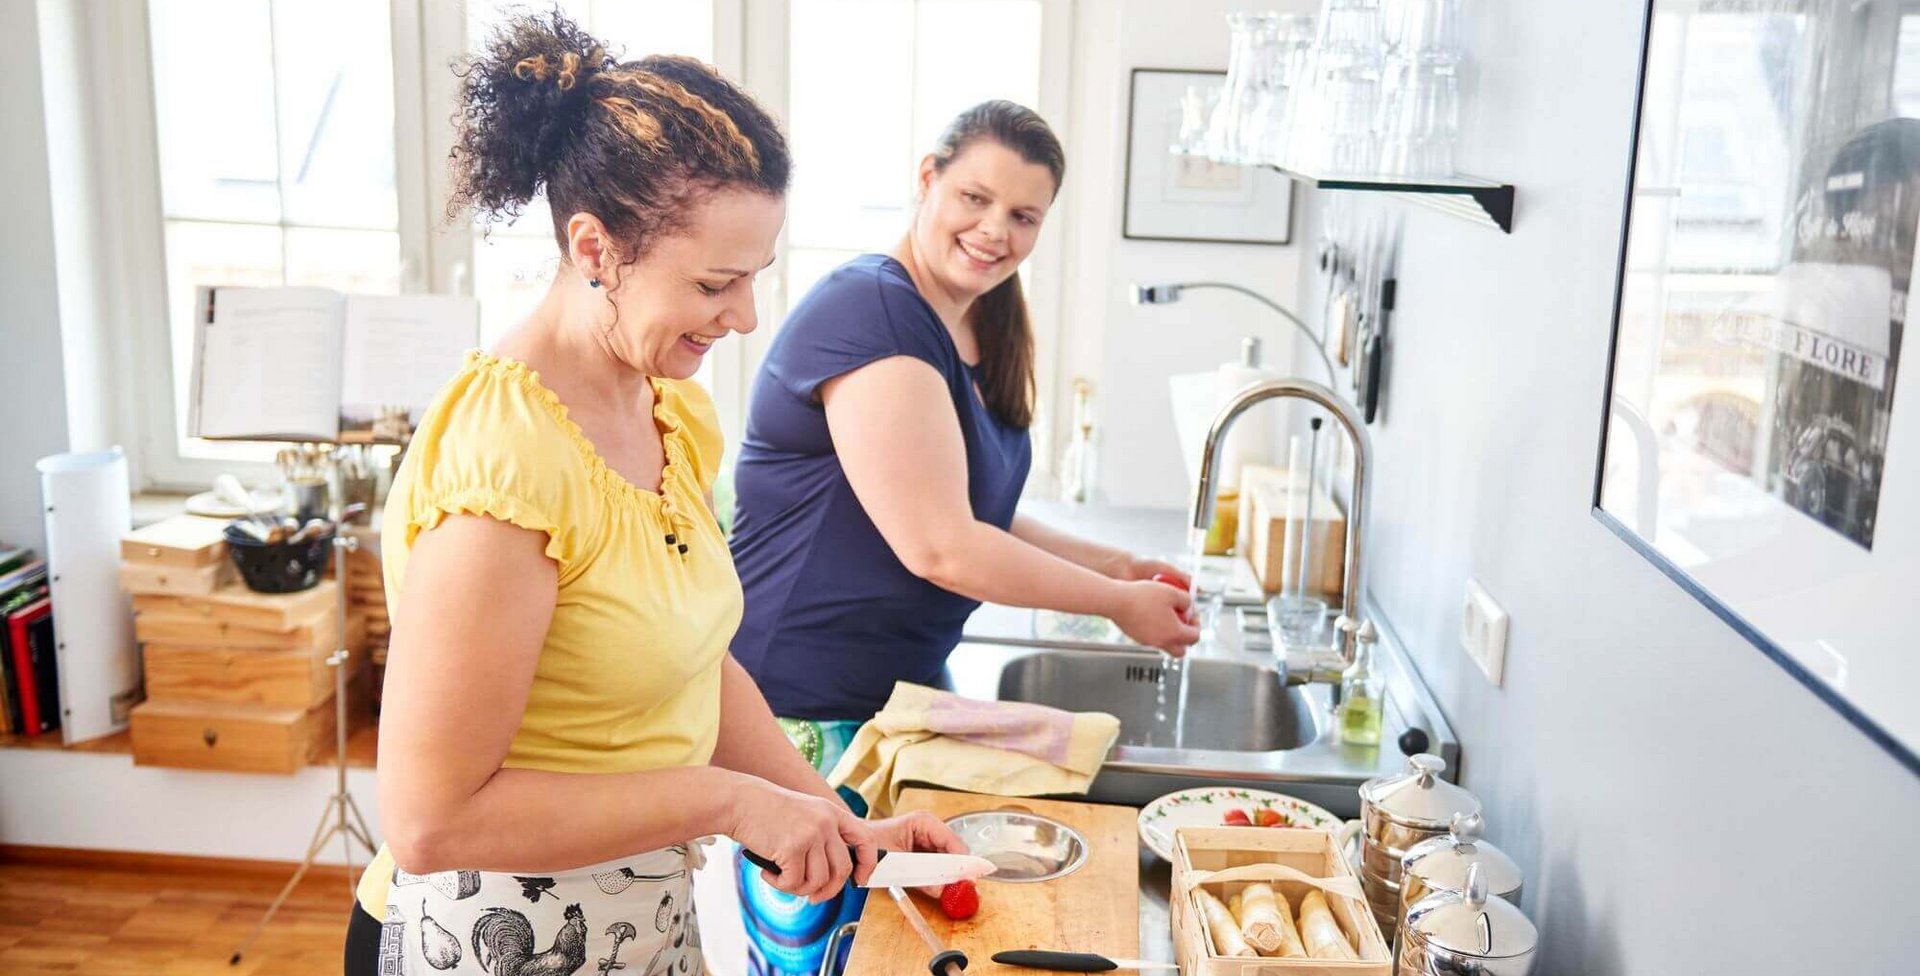 Zwei Frauen stehen in einer Küche und kochen zusammen. Eine gesunde und ausgewogene Ernährung ist sehr hilfreich bei der Behandlung von Lipolymphödemen.